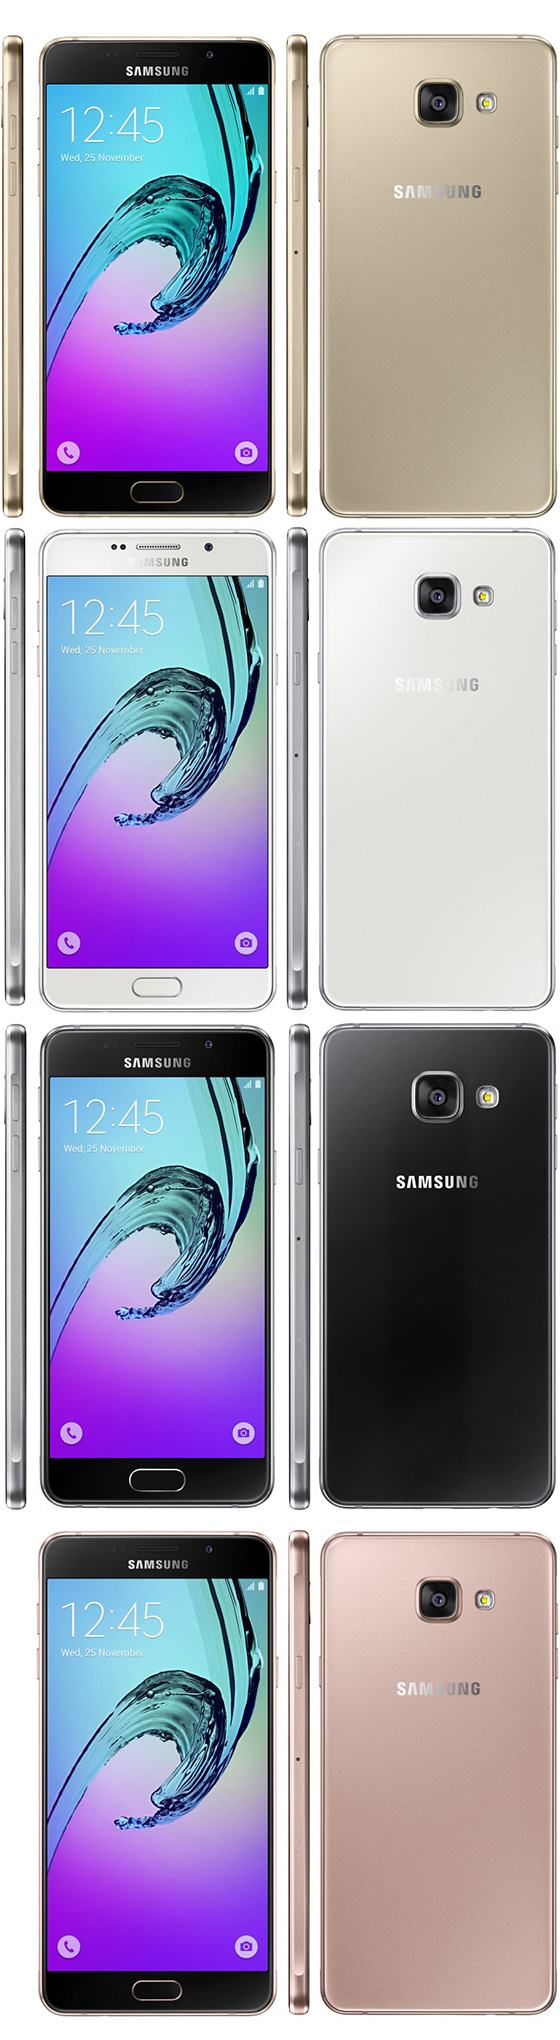 Samsung Galaxy A3 2016 